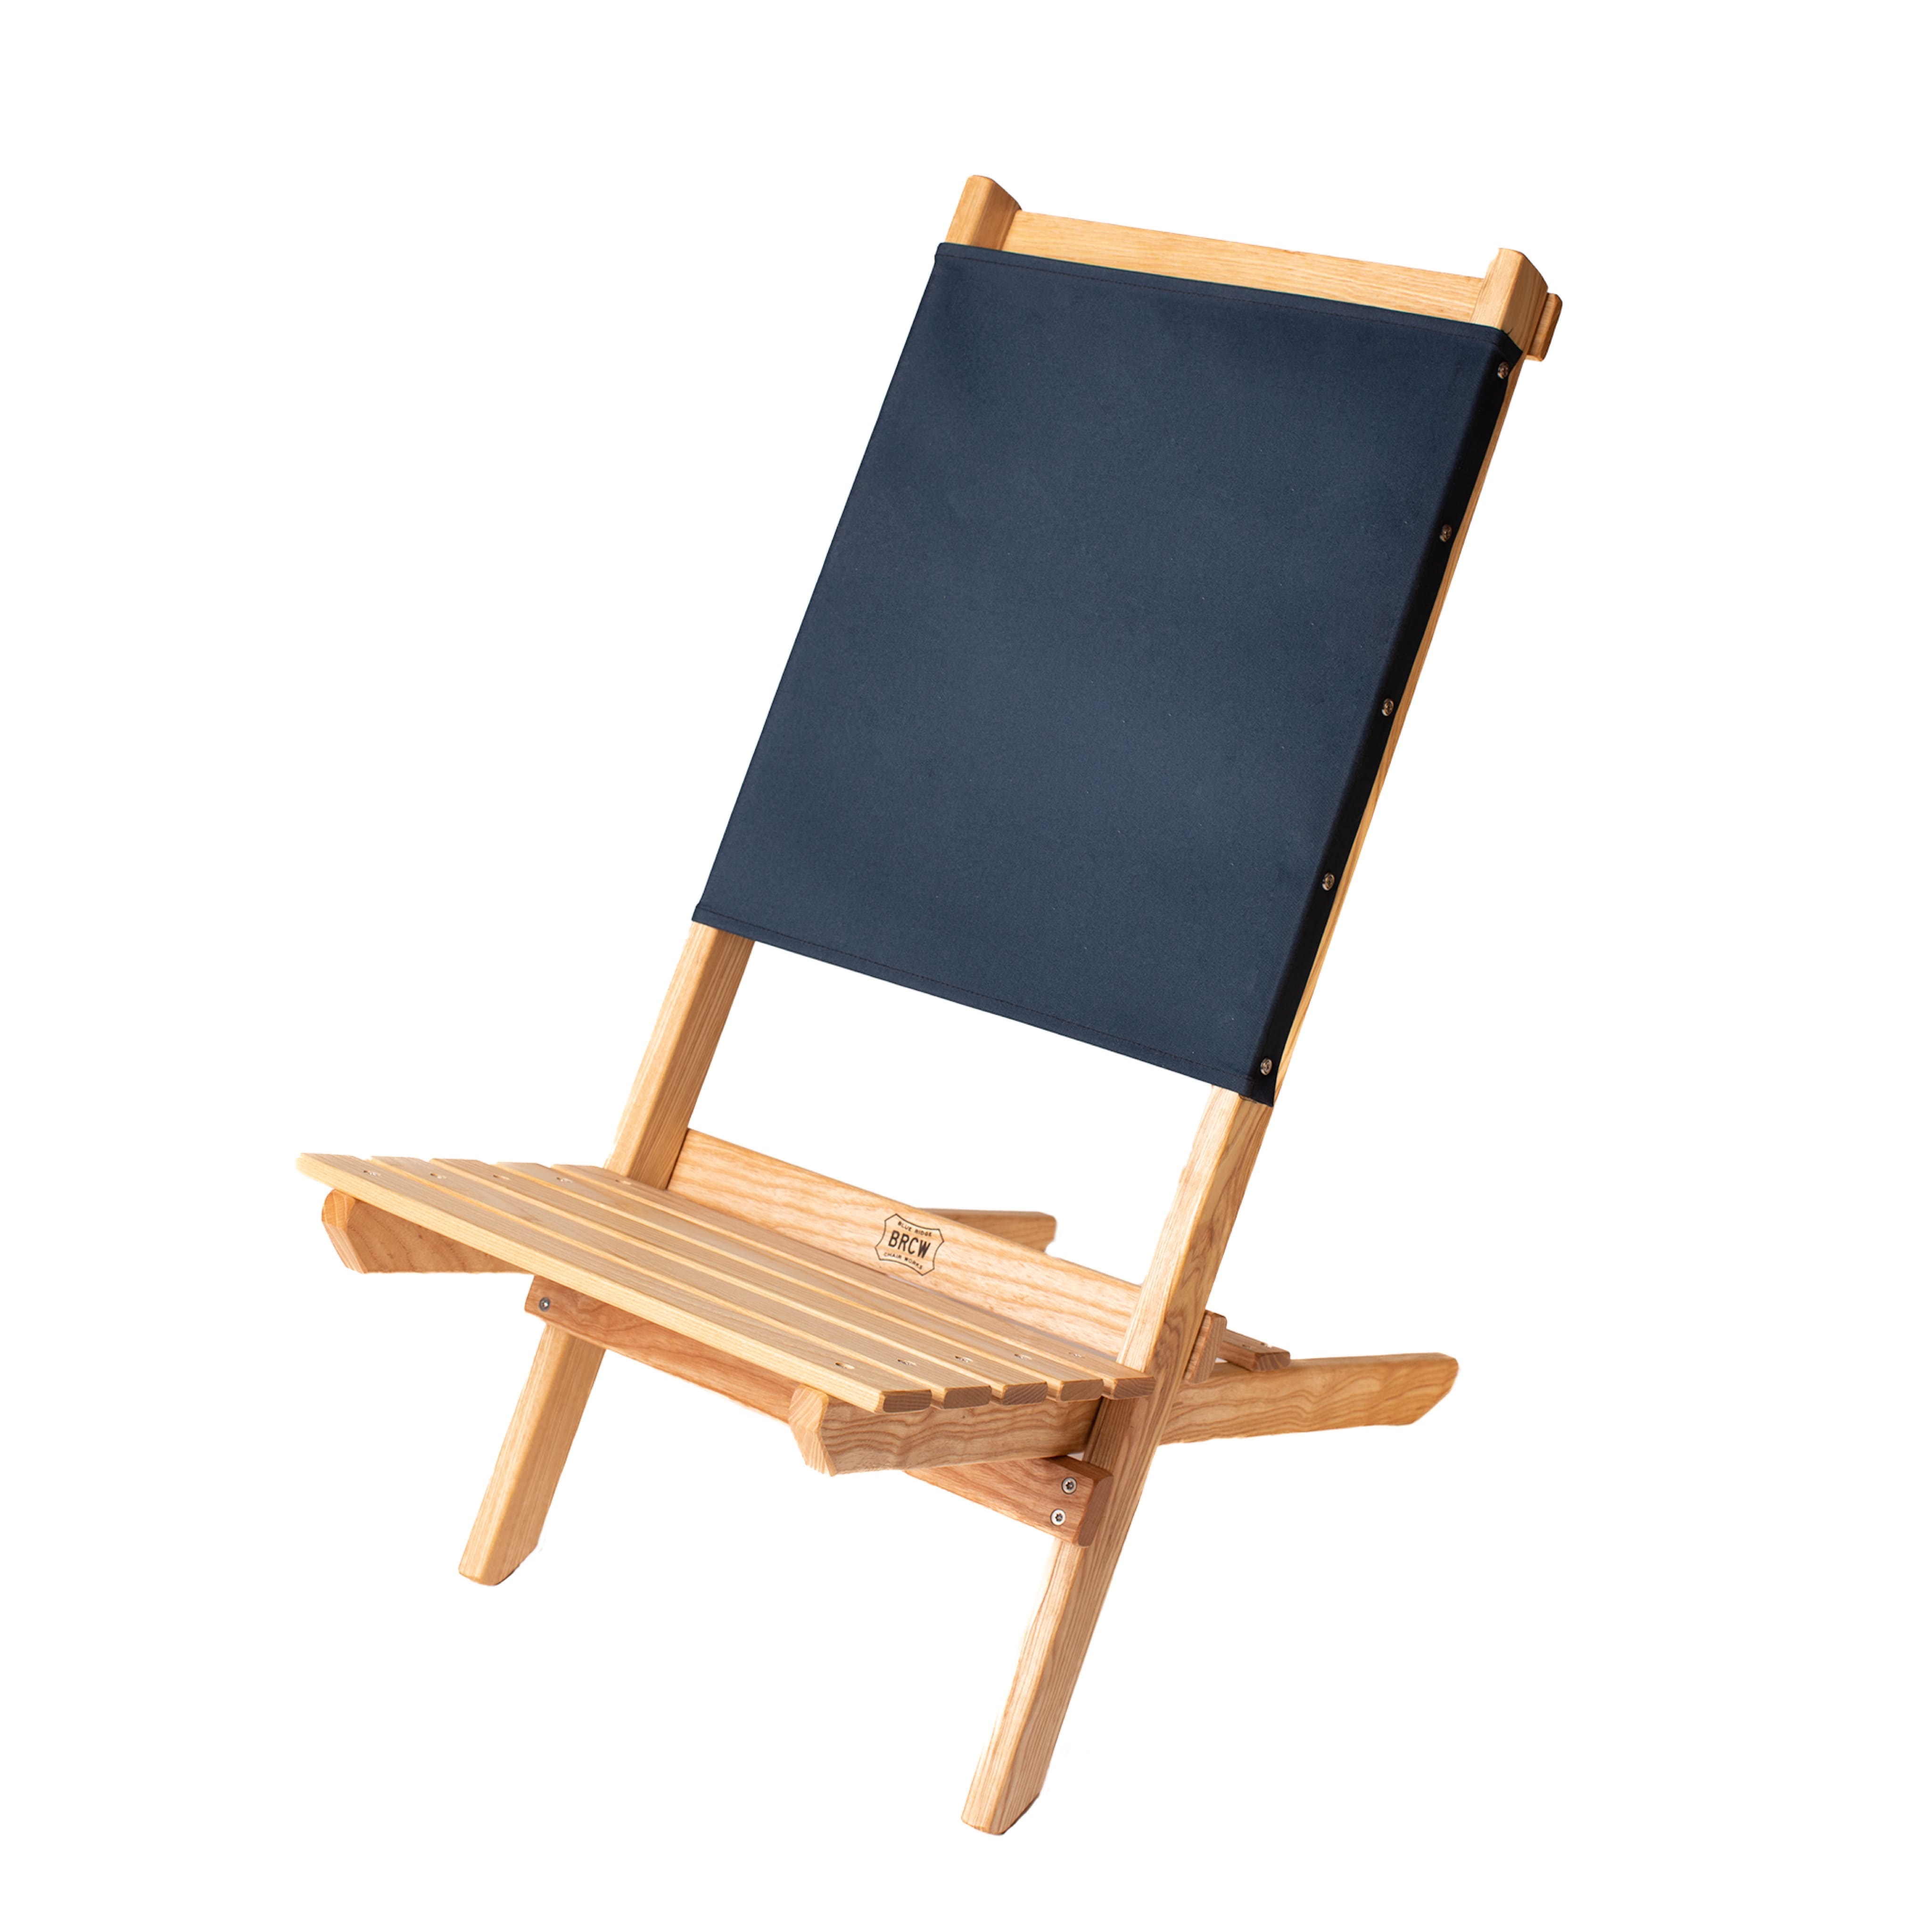 Blue Ridge Chair – Blue Ridge Chair Works